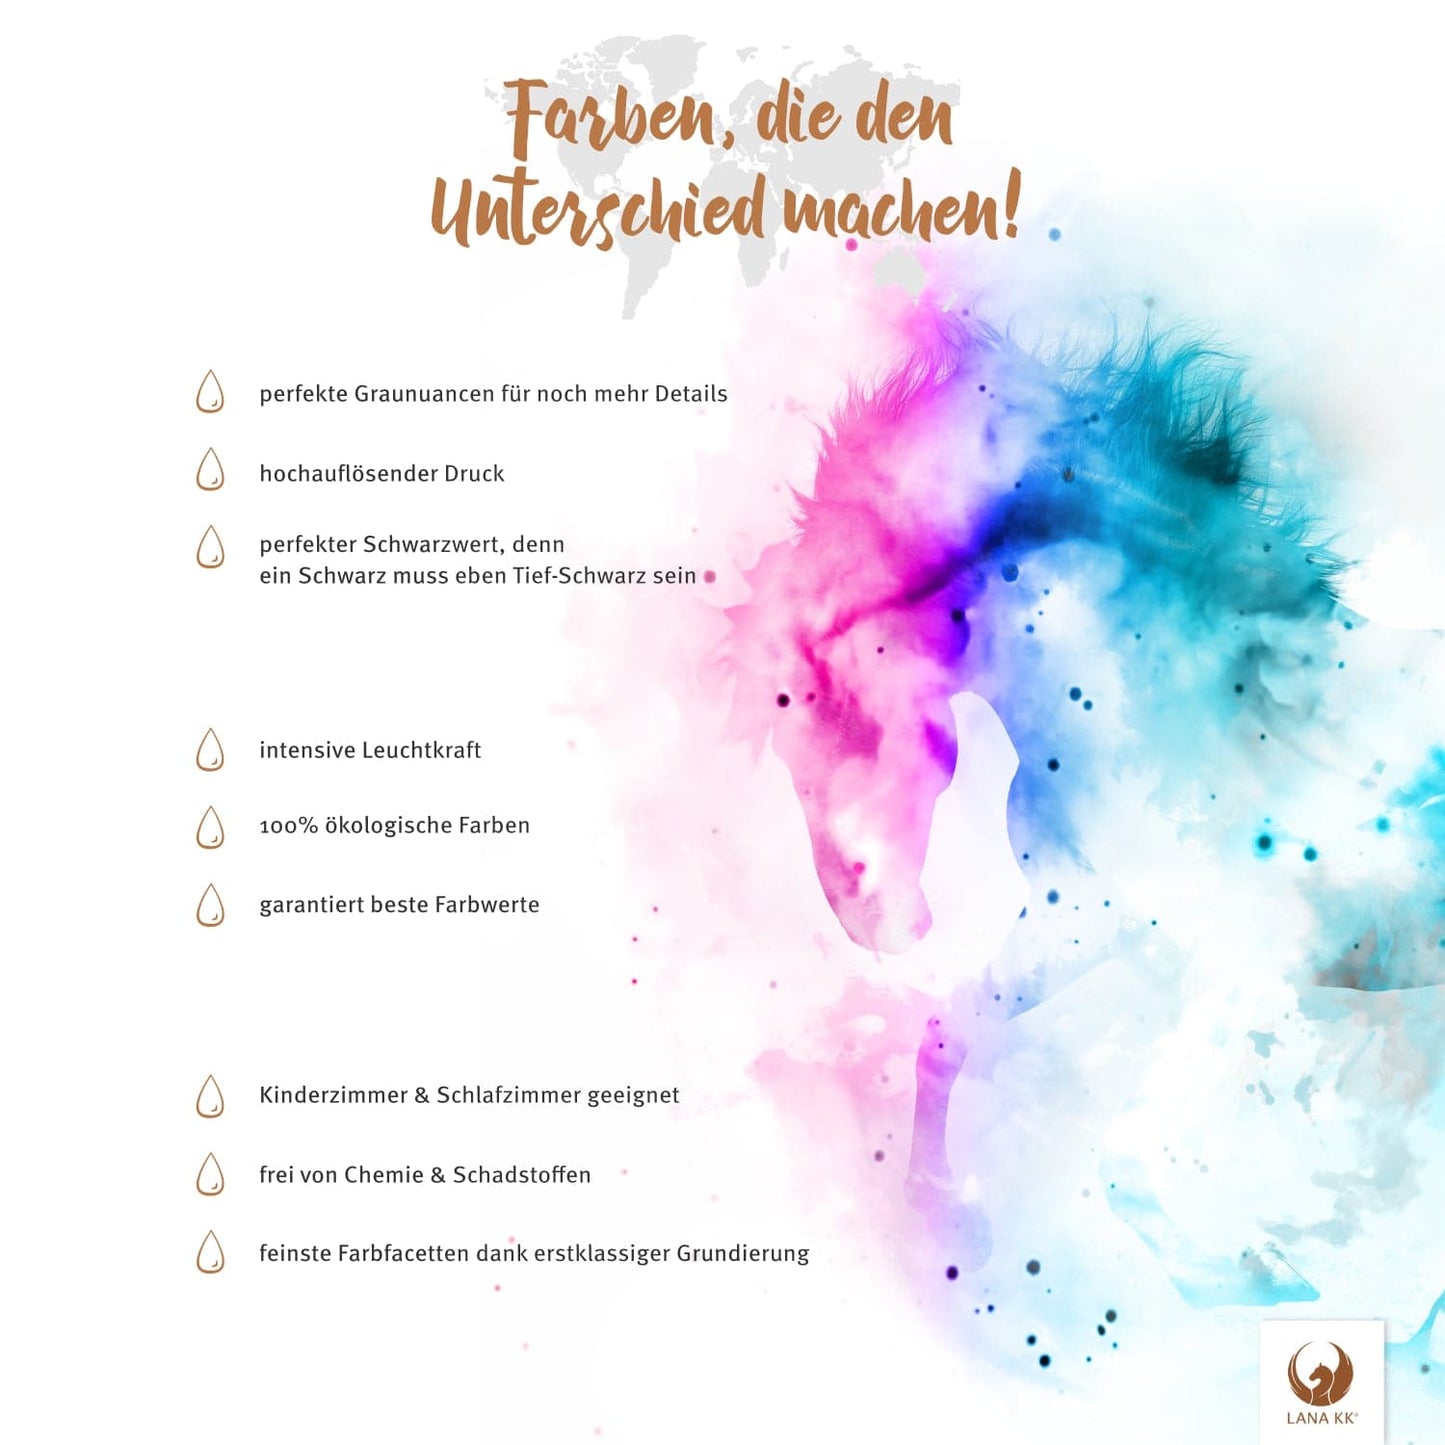 Farben, die den Unterschied machen! Deine Österreichkarte Grau Sand besticht mit erstklassigem Druck, leuchtenden Farben und ist dabei vollkommen frei von Chemie und Farbstoffen.